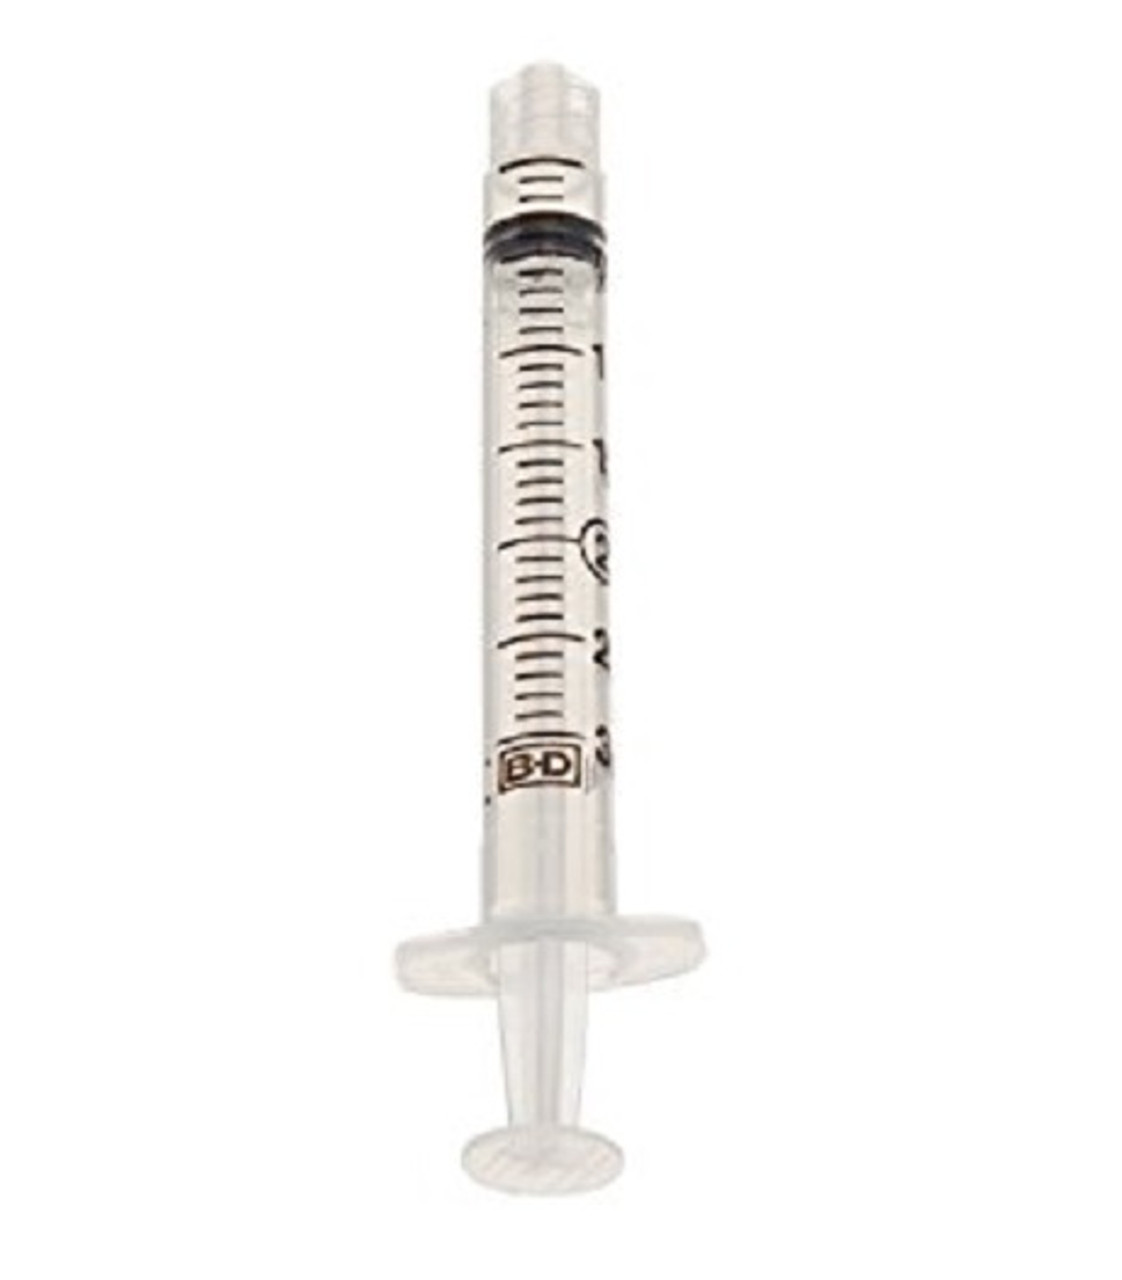 BD 301073 Syringe Only, 3mL, Luer-Lok Tip, Non-Sterile, Bulk CA/1600